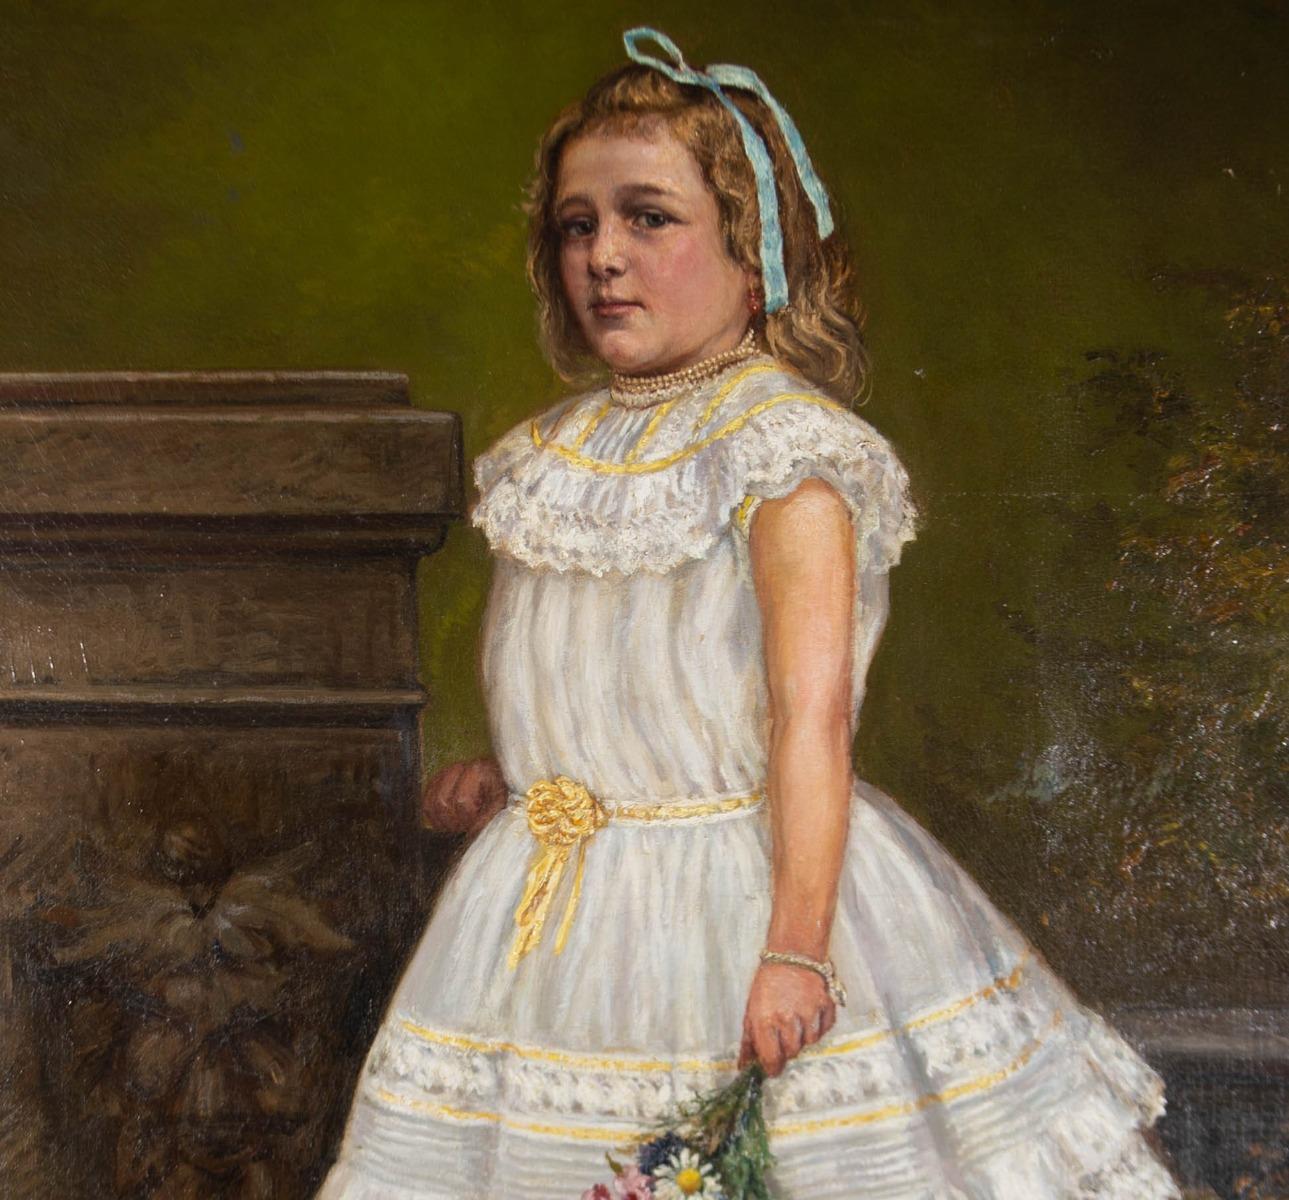 R. Sperber - 1902 Oil, The Party Dress 1